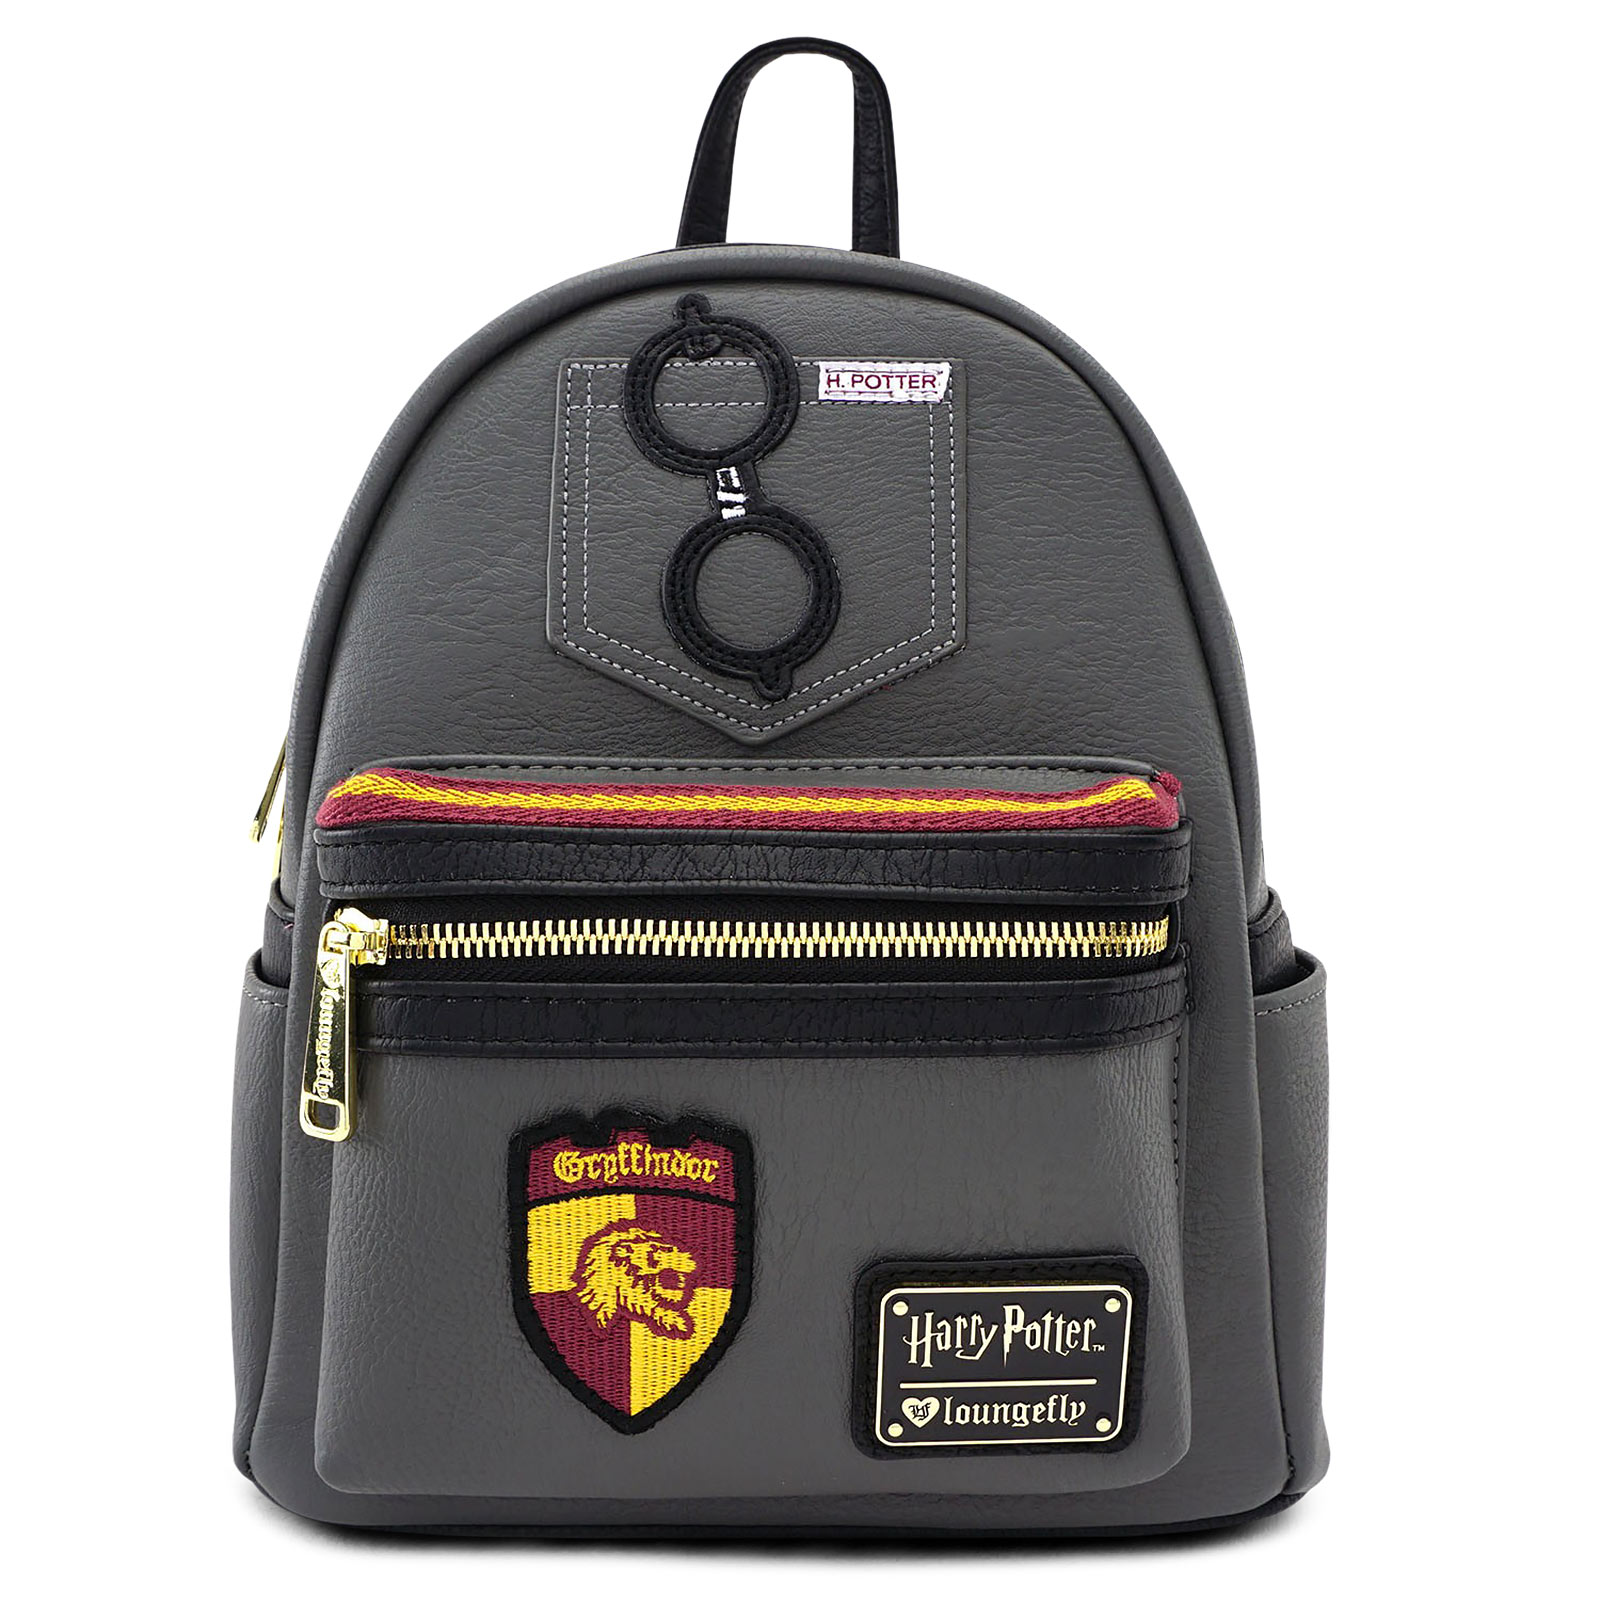 Harry Potter - Gryffindor Mini Backpack Grey